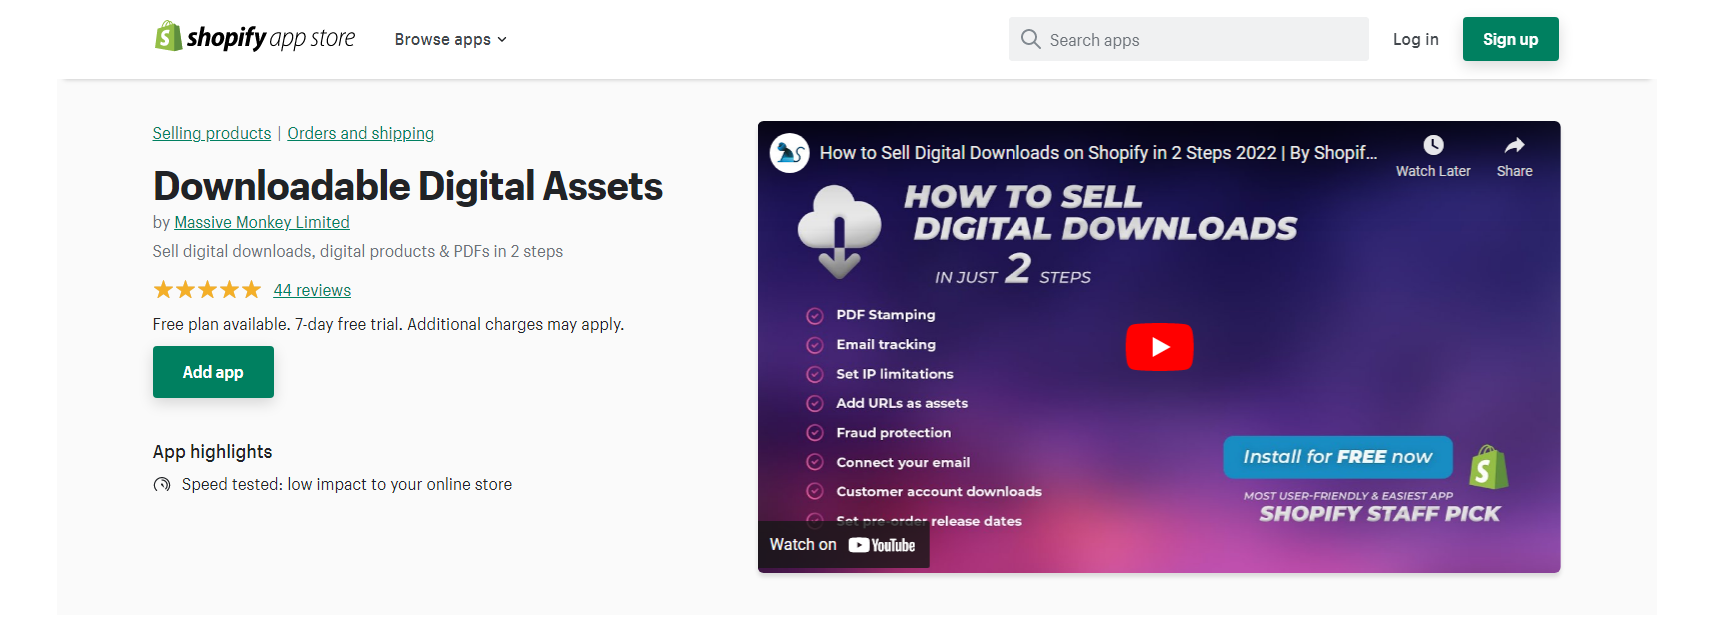 Downloadable Digital Assets - Shopify Digital Downloads